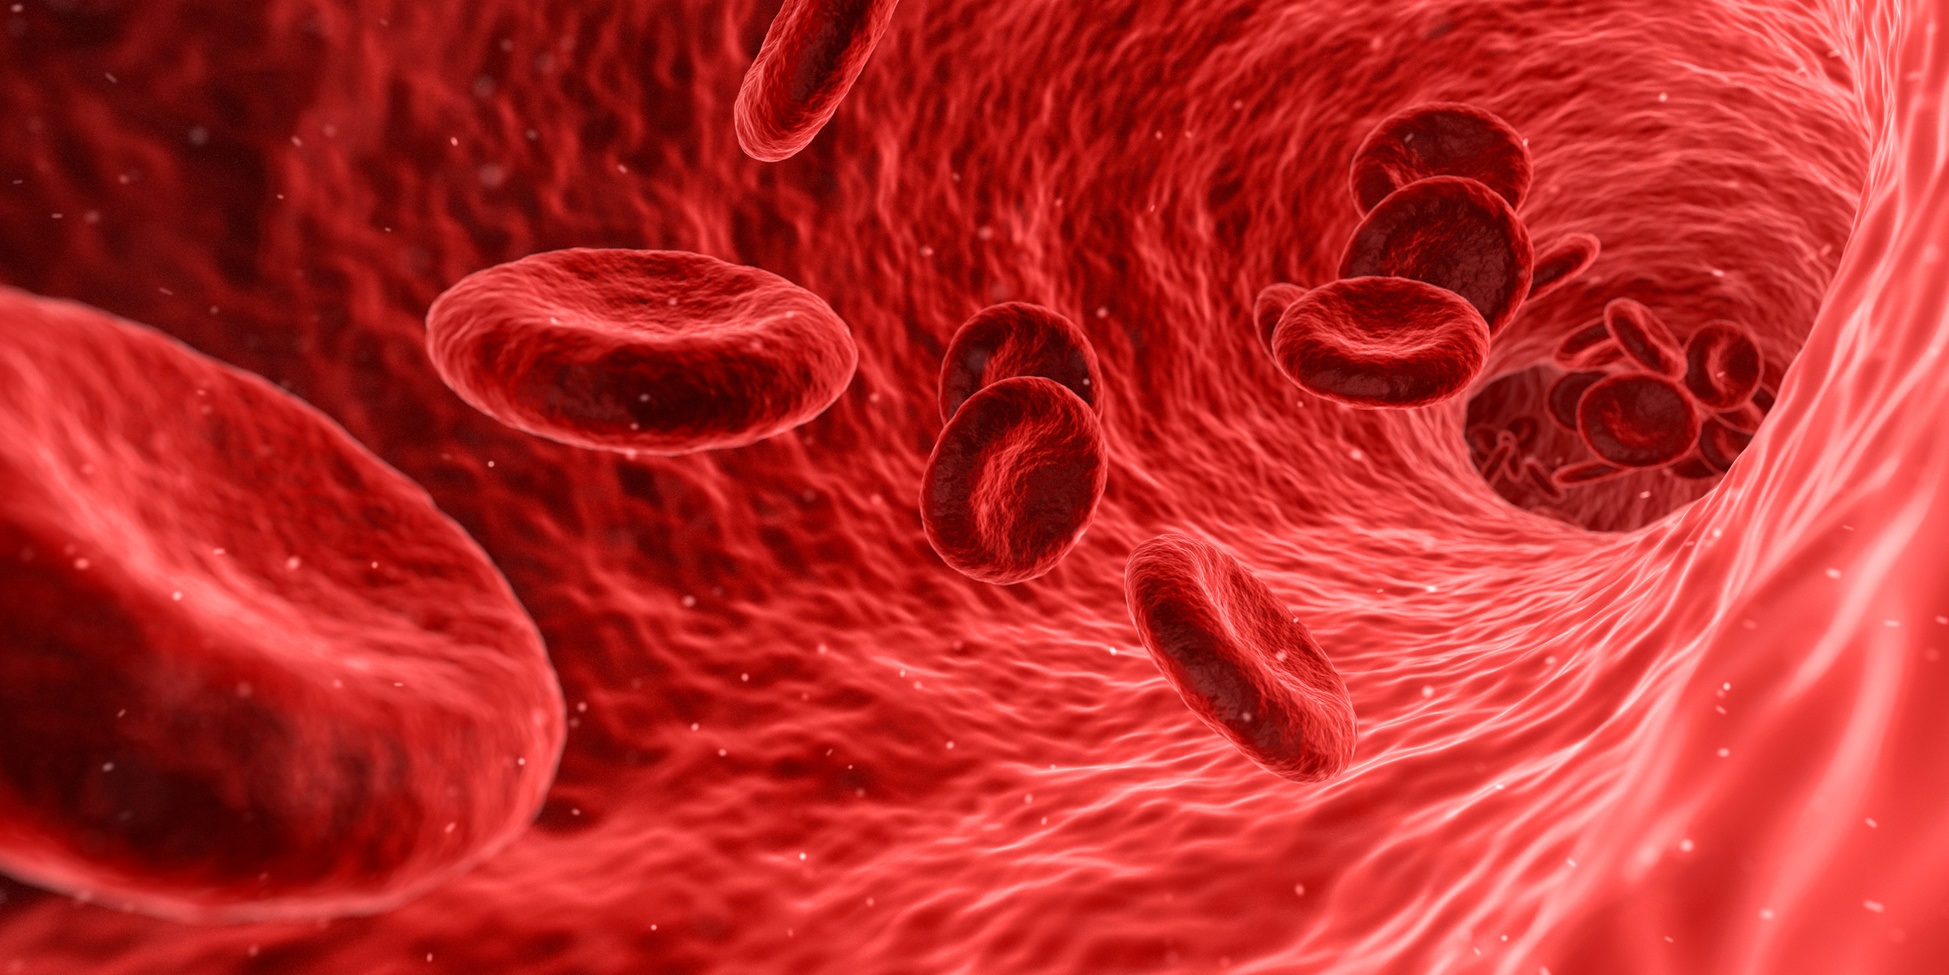 Ce que vous mangez et votre microbiome intestinal déterminent vos marqueurs sanguins.&nbsp;© Francis Bonami, Fotolia